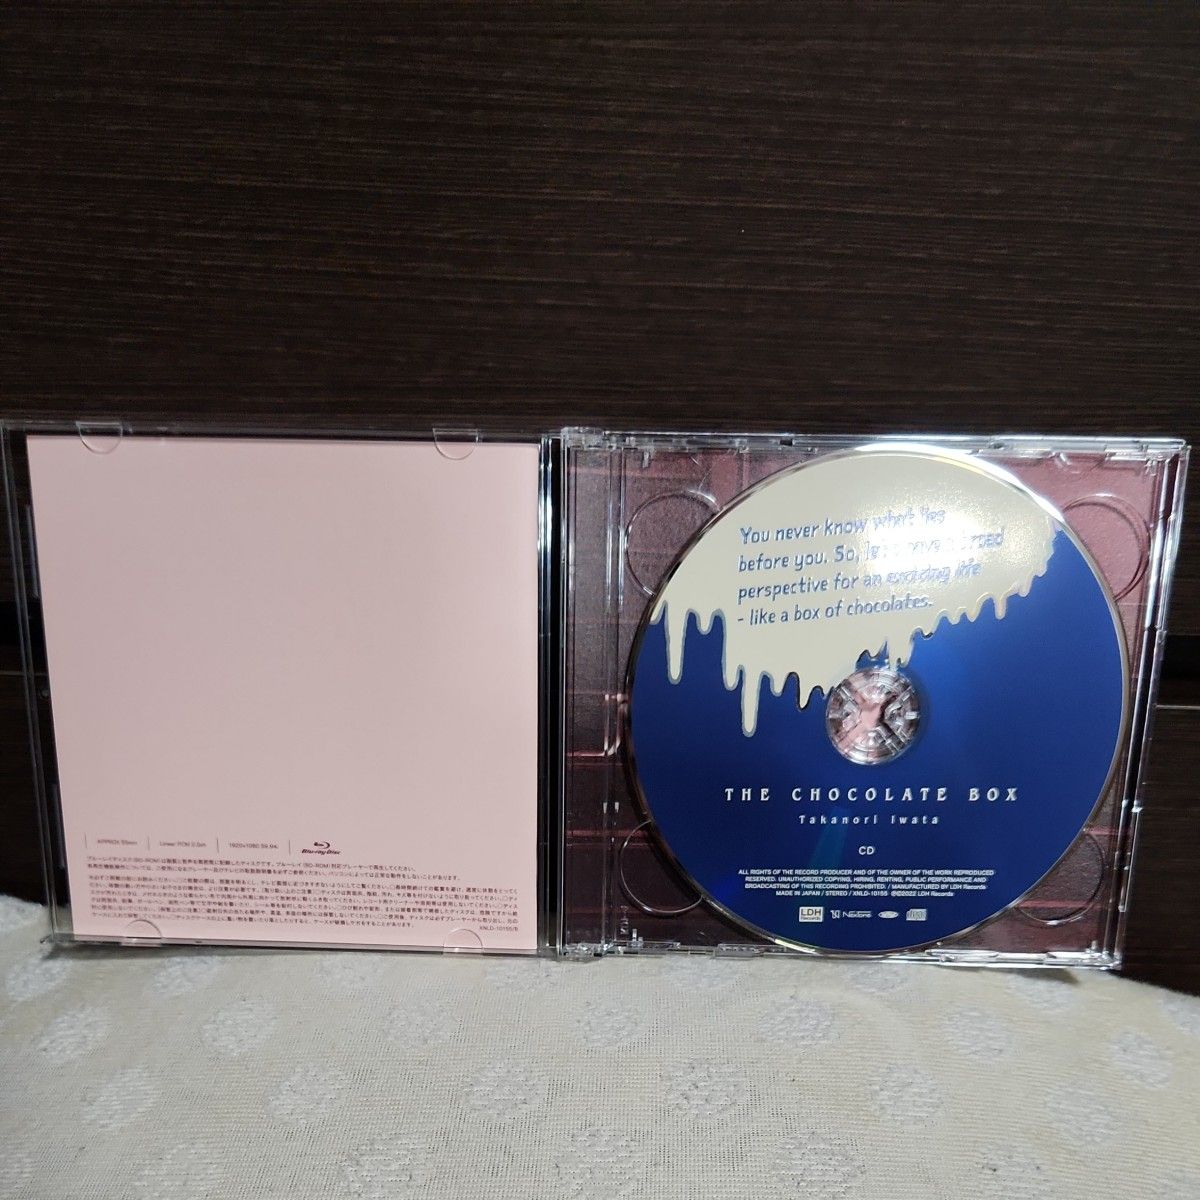 初回生産限定盤 箱仕様フォトブックトレカシリアルナンバー封入 岩田剛典 CD+Blu-rayTheChocolateBox 